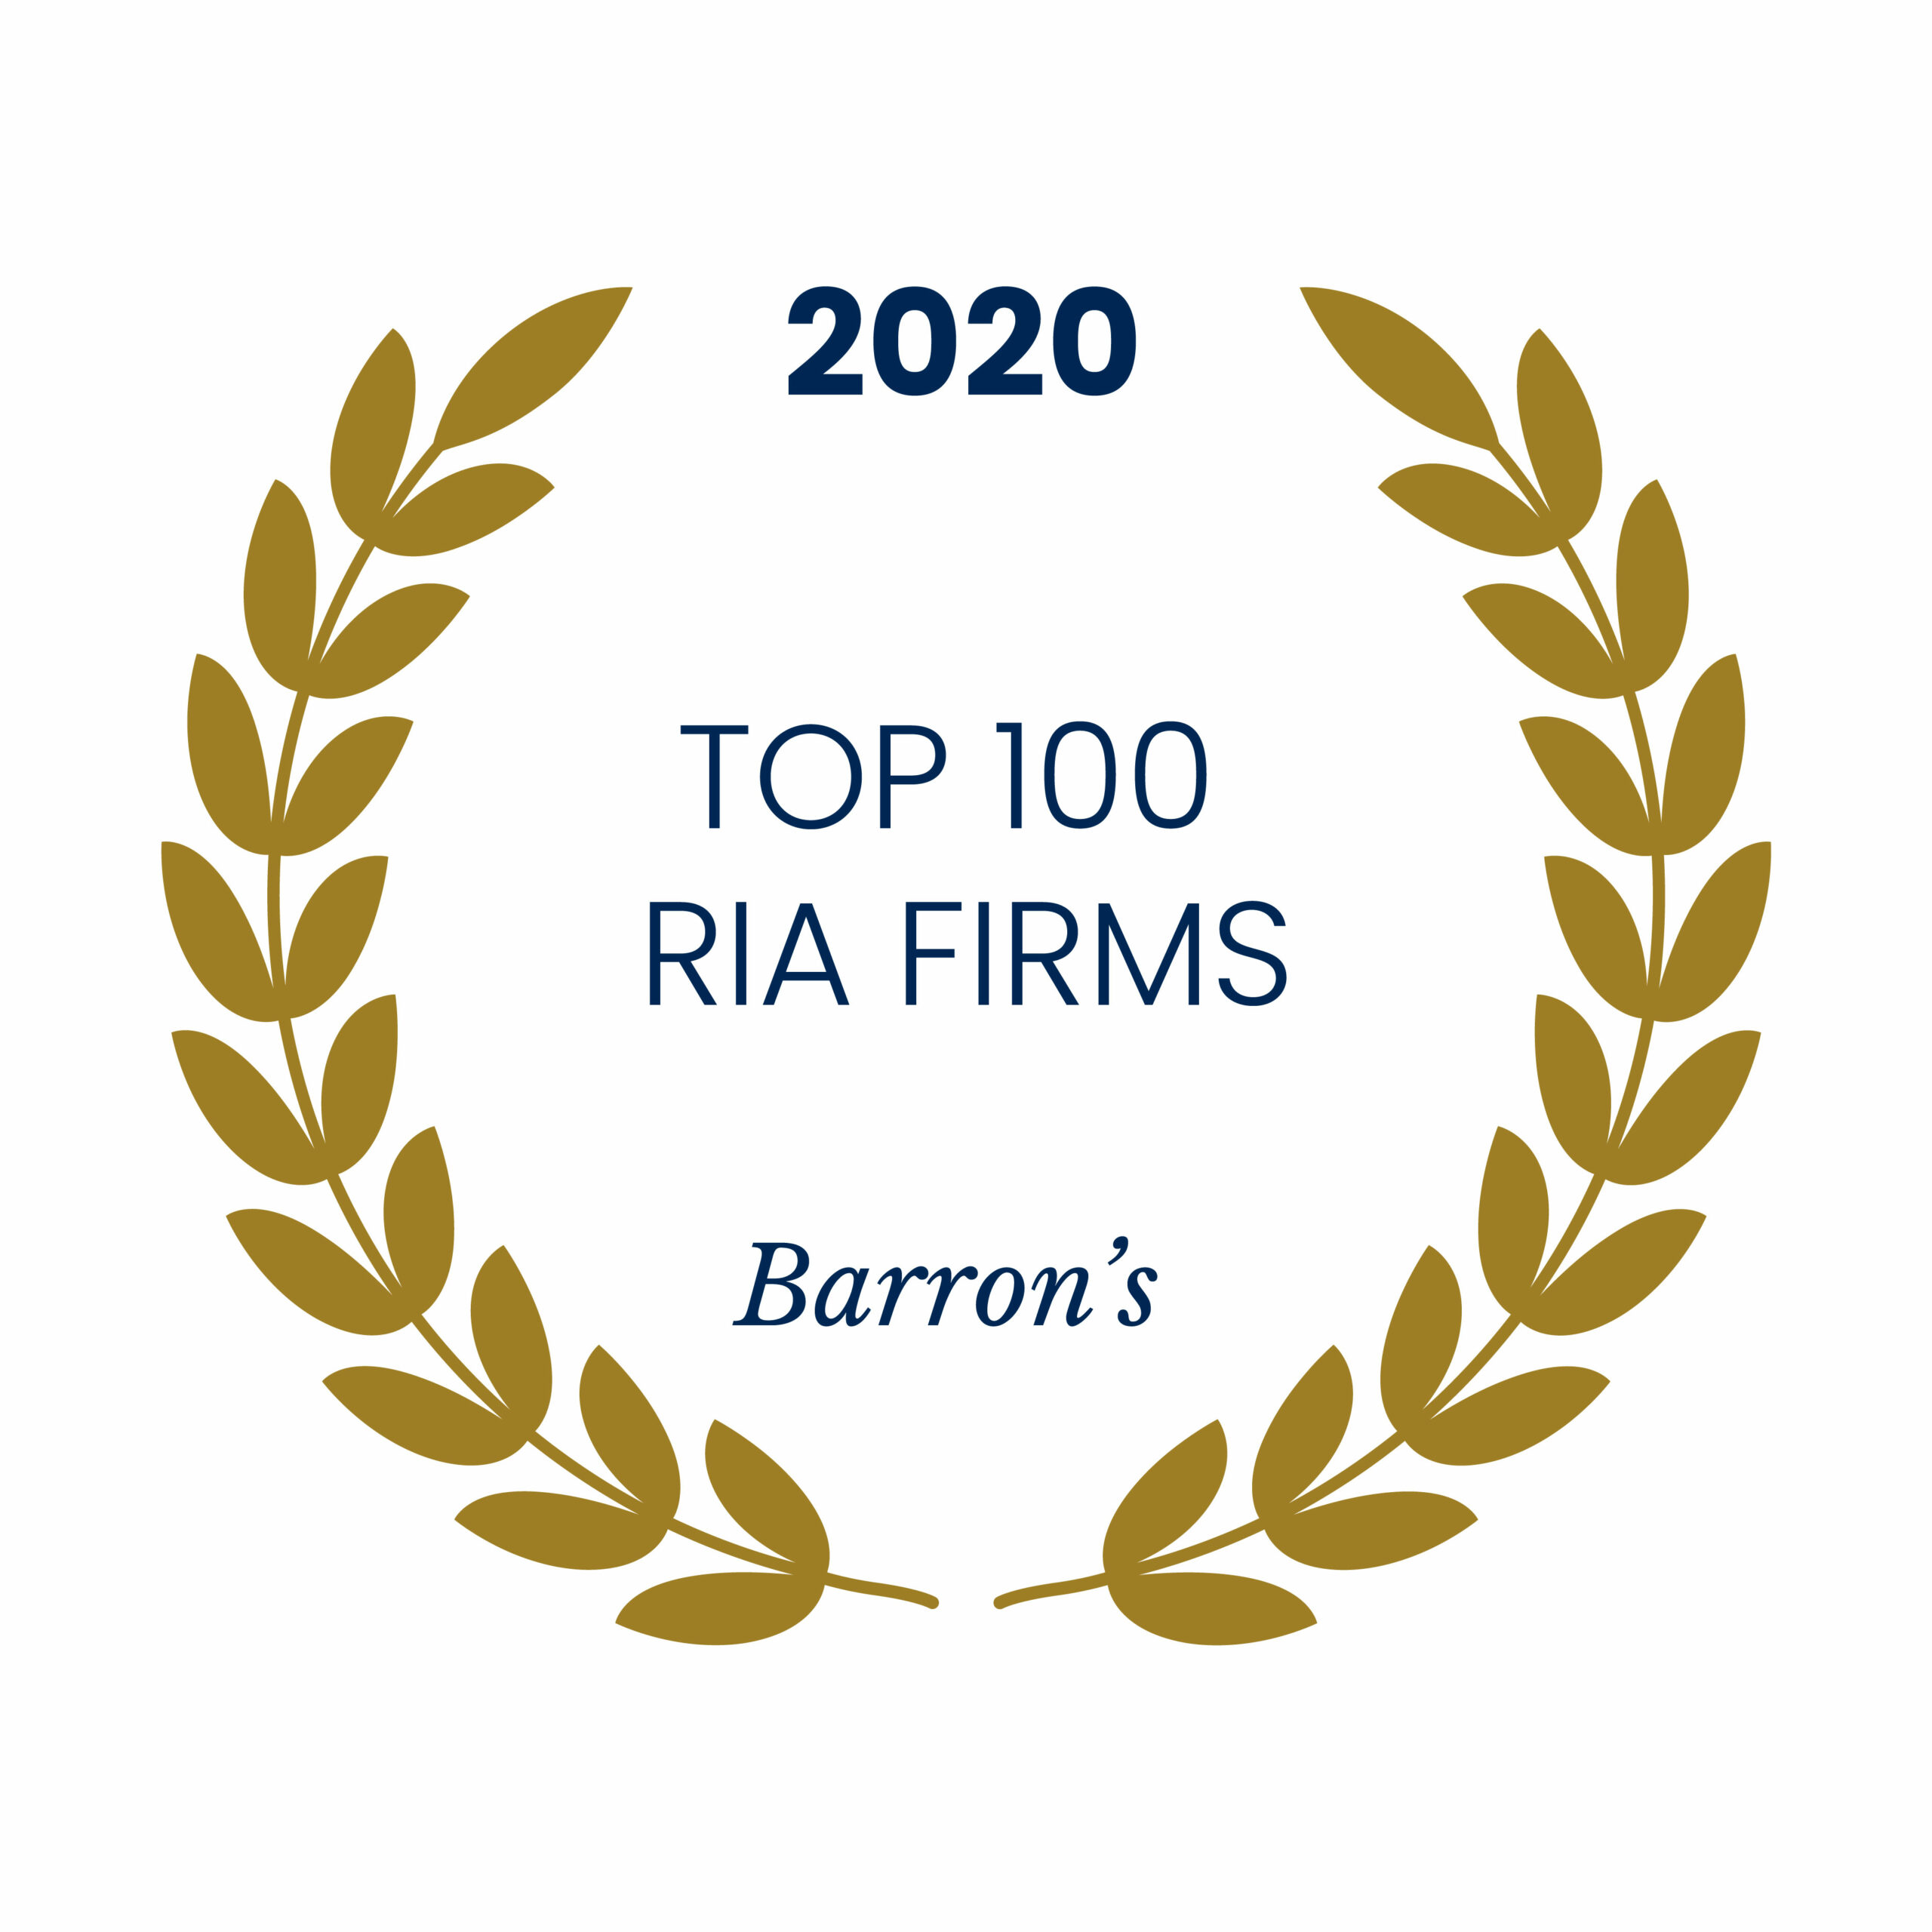 2020 Top 100 RIA Firms